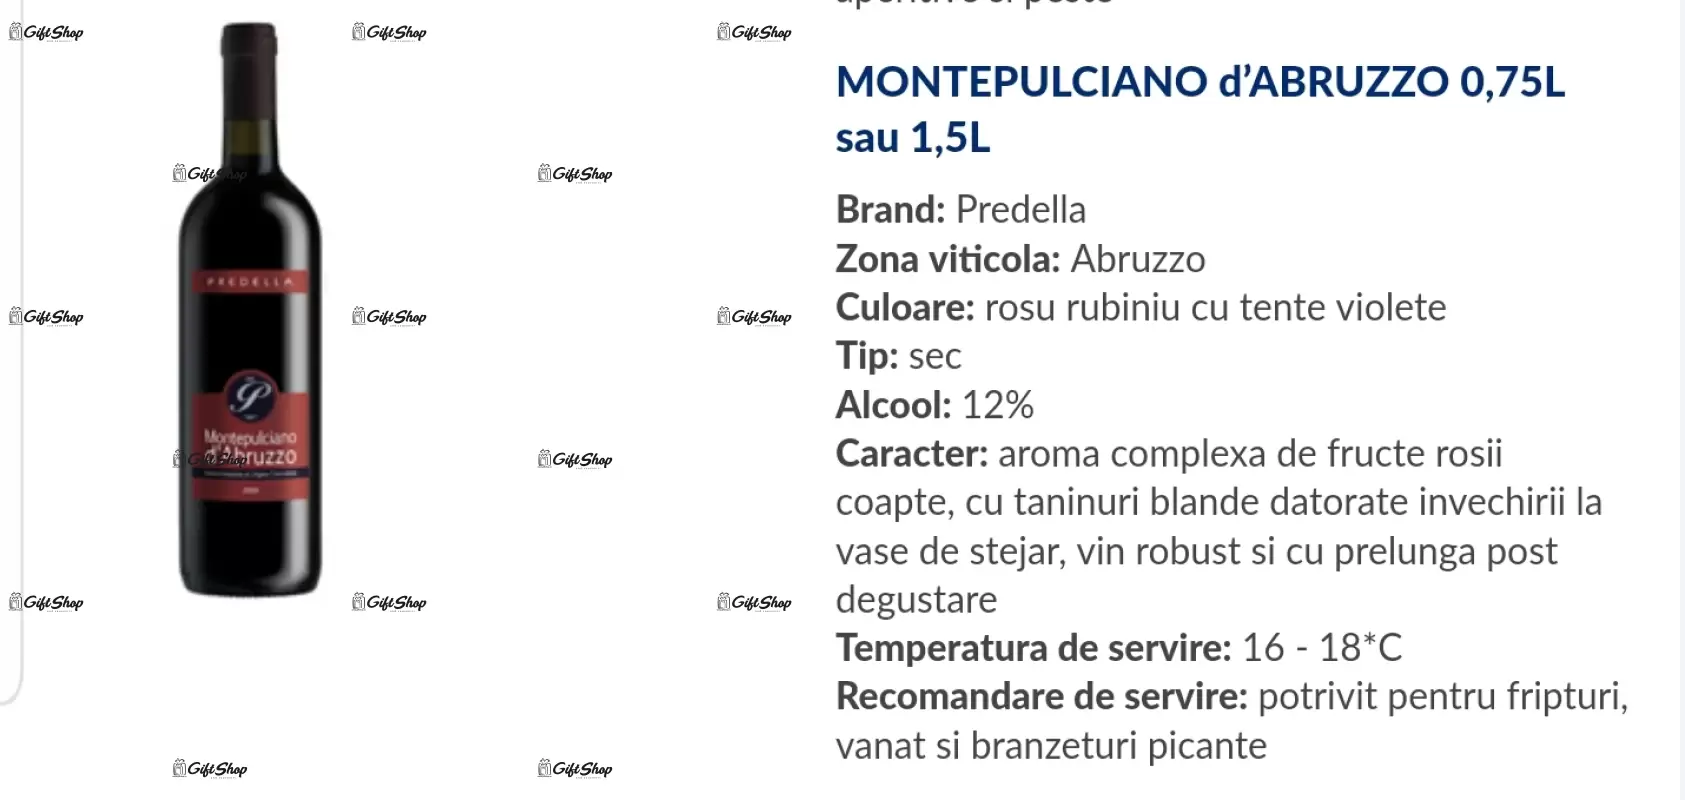 Pentru cei mai buni socri, editie limitata, rosu predellea abruzzo, sec, 12.5% alc.